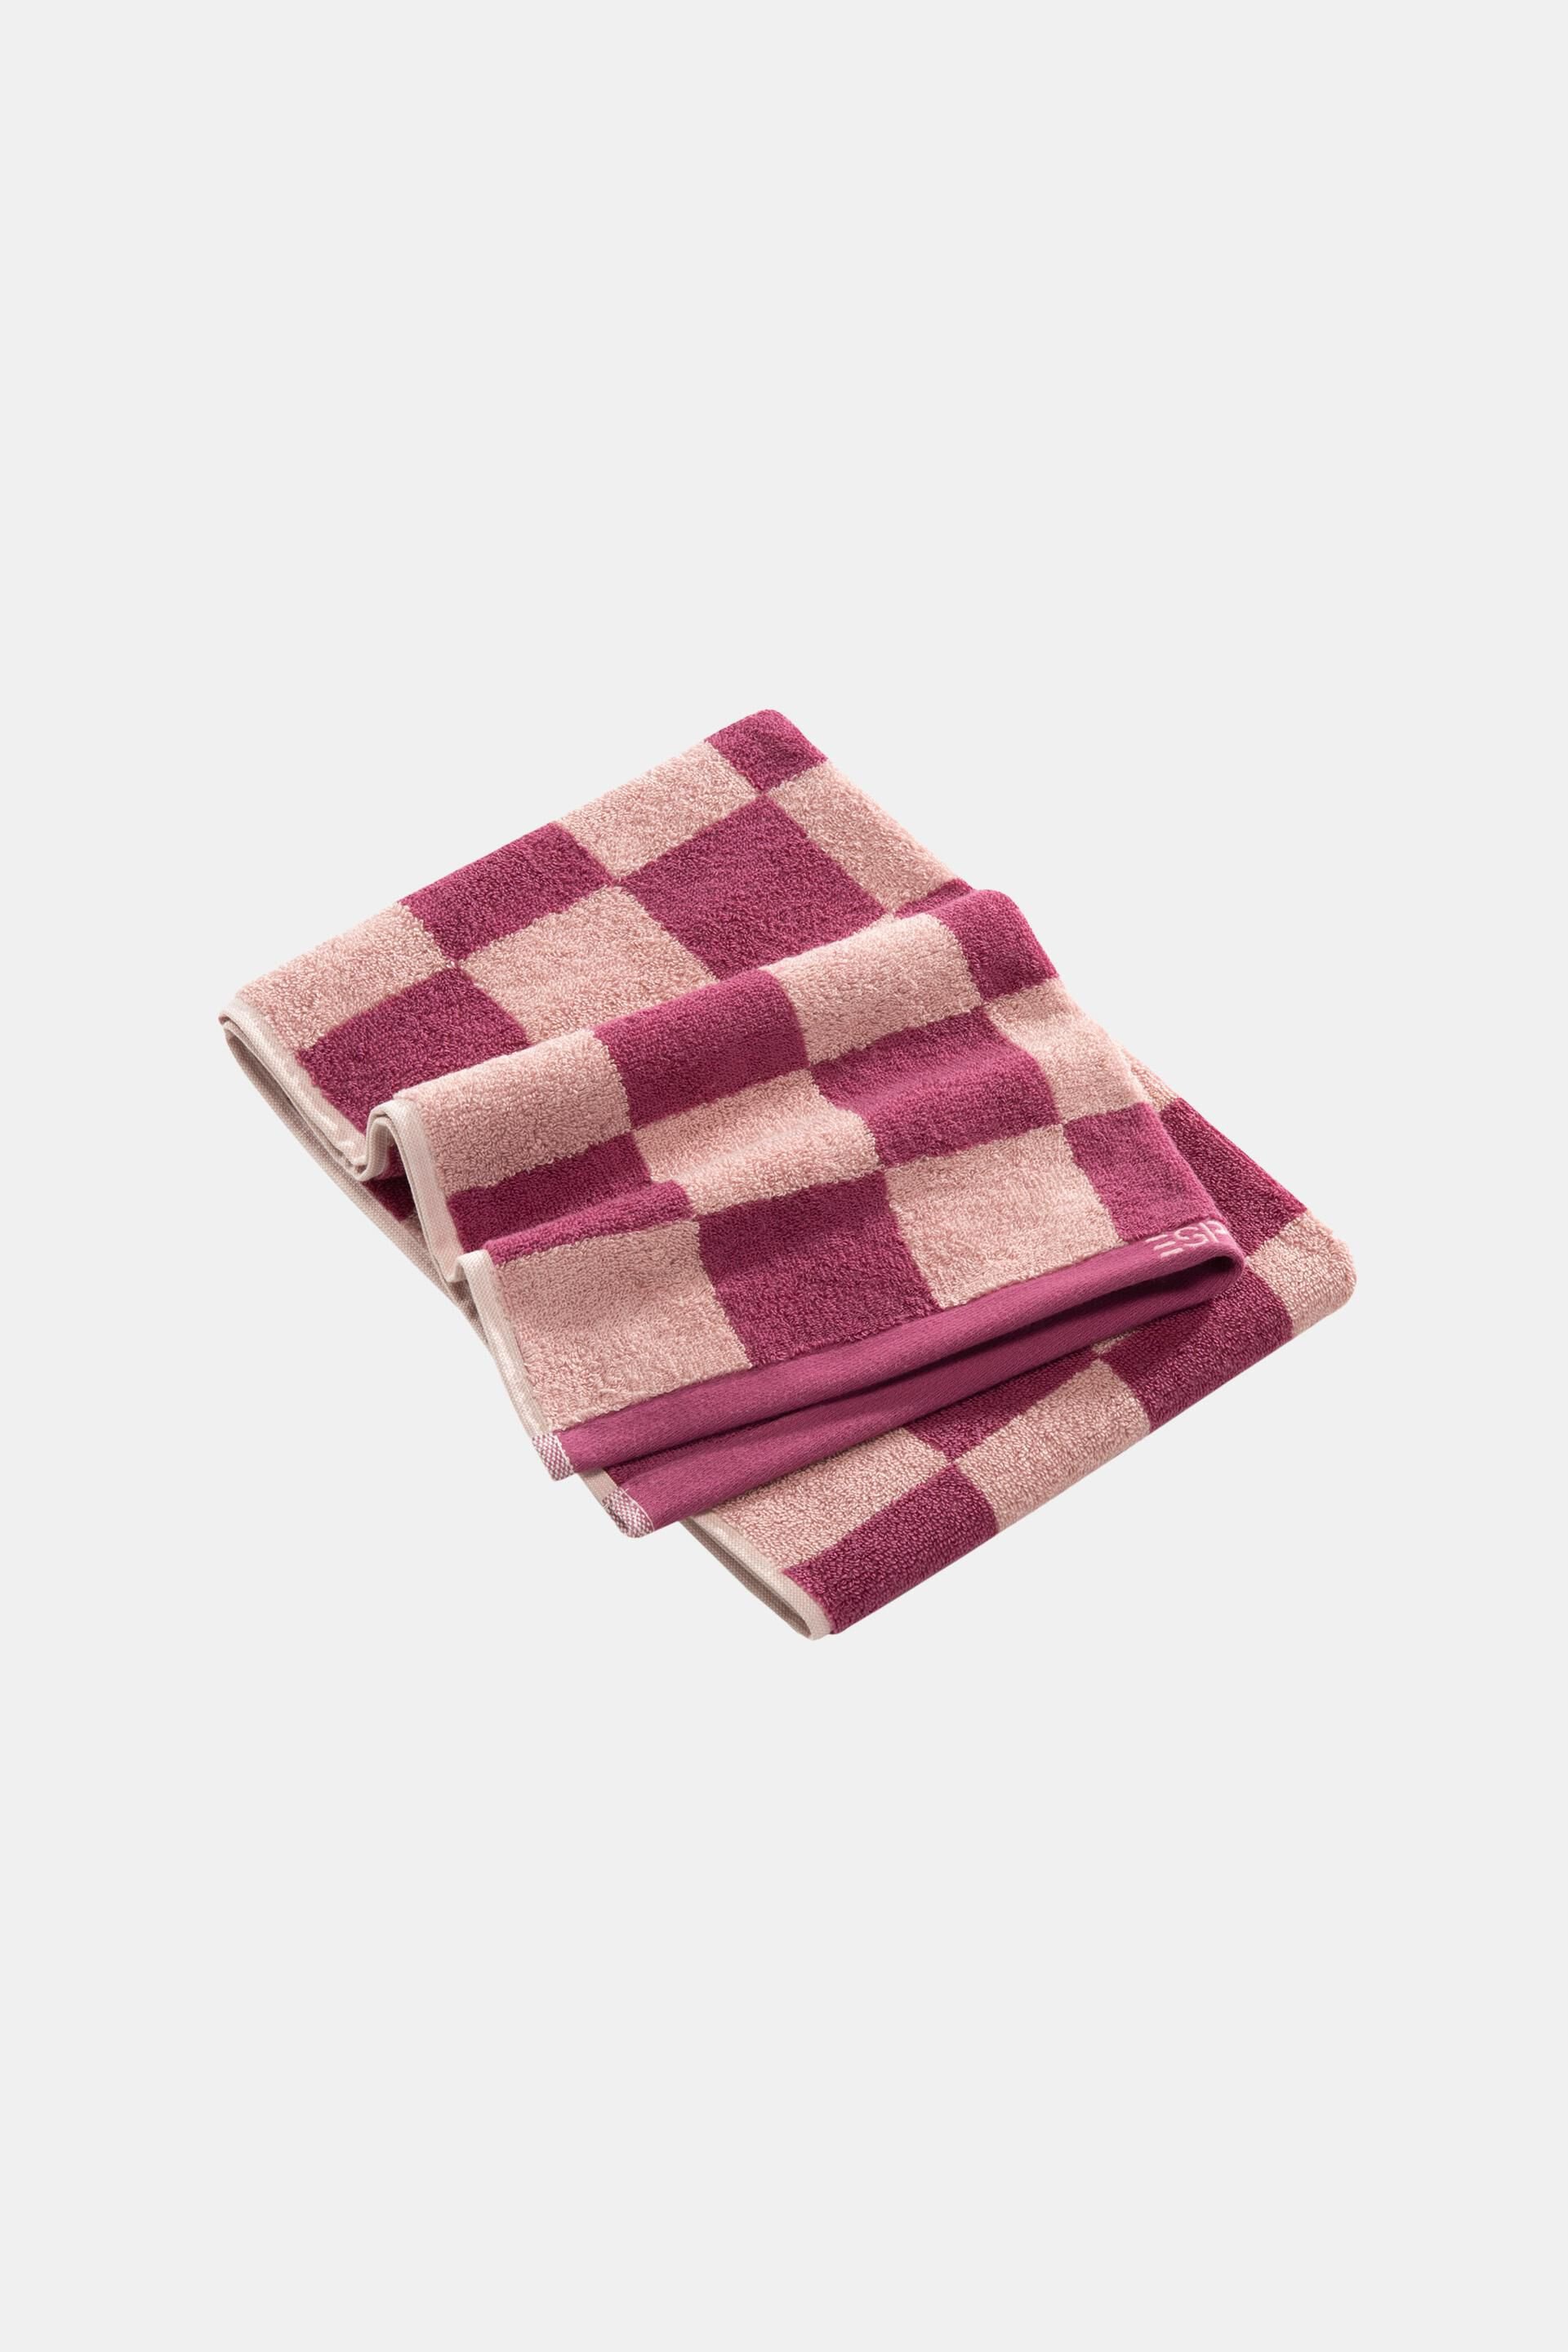 Esprit Chequered 100% pattern cotton towel,